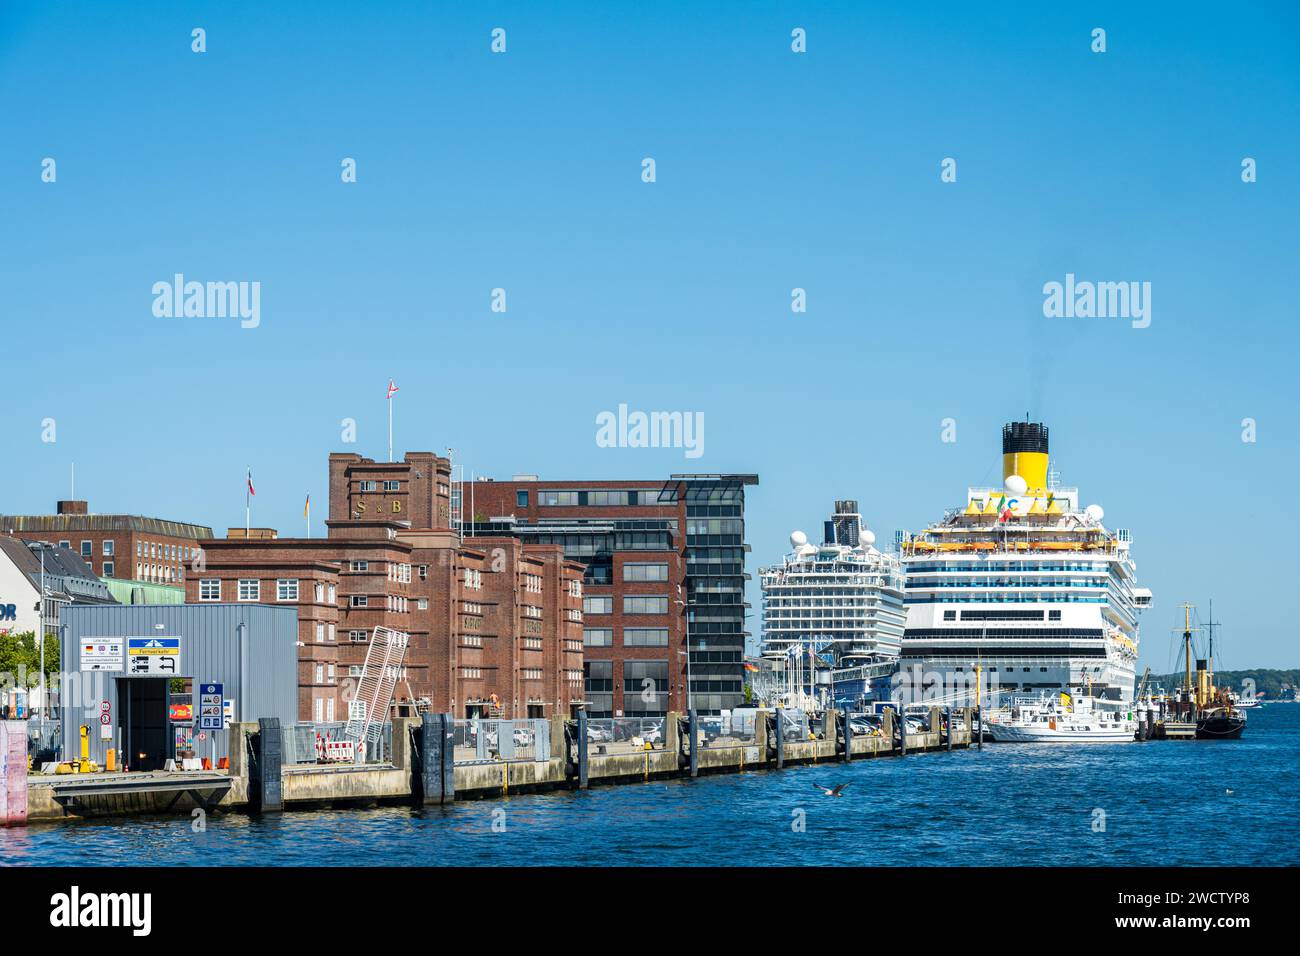 Aufnahme vom Sartorikai mit dem Sartorispeicher und dem Sellspeicher. Im Hintergrund zwei Kreuzfahrtschiffe am Ostseekai in Kiel Stock Photo